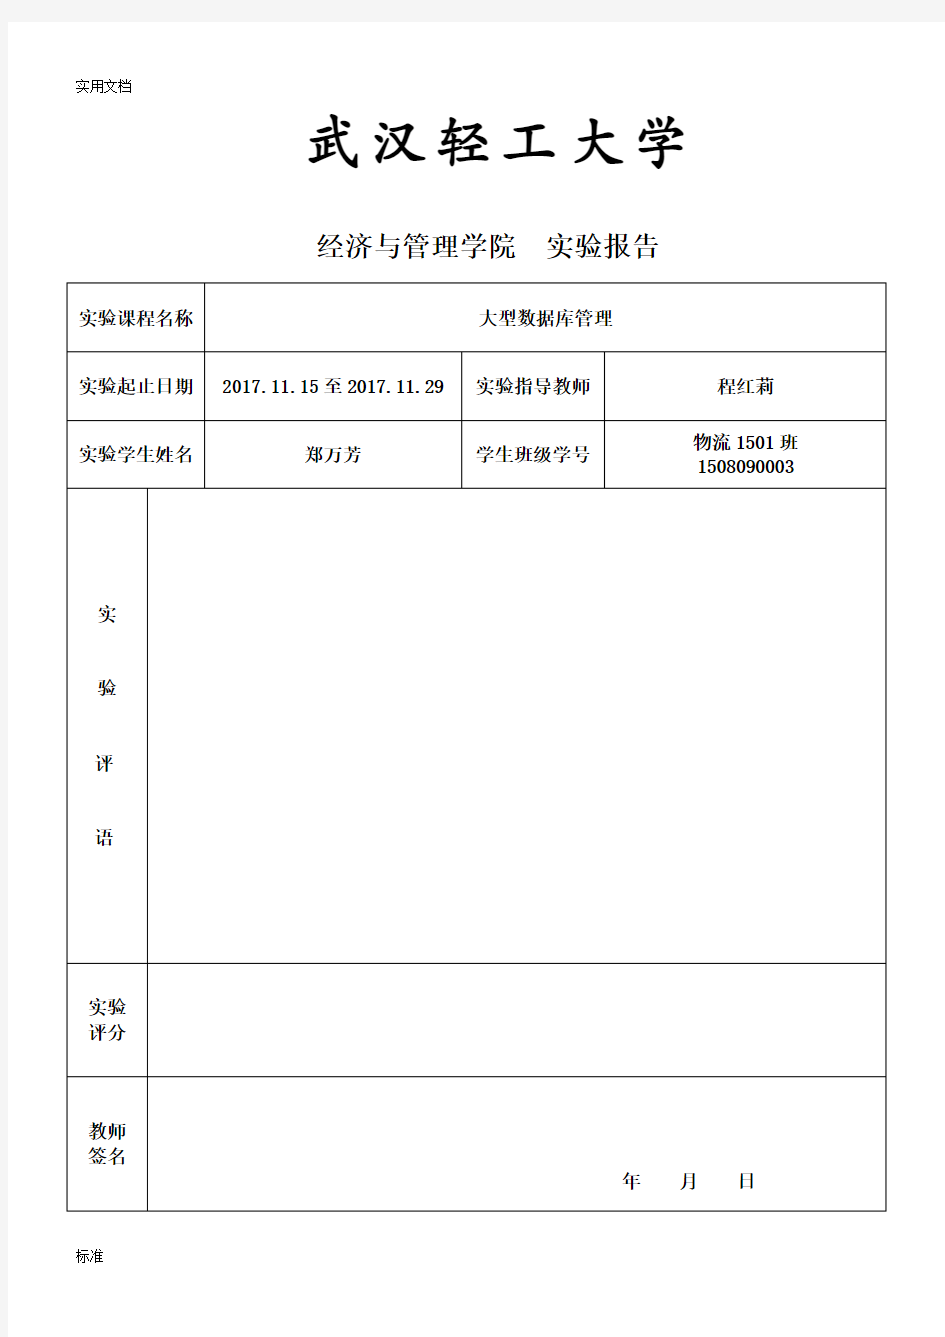 武汉轻工大学大数据库1508090003实验2报告材料